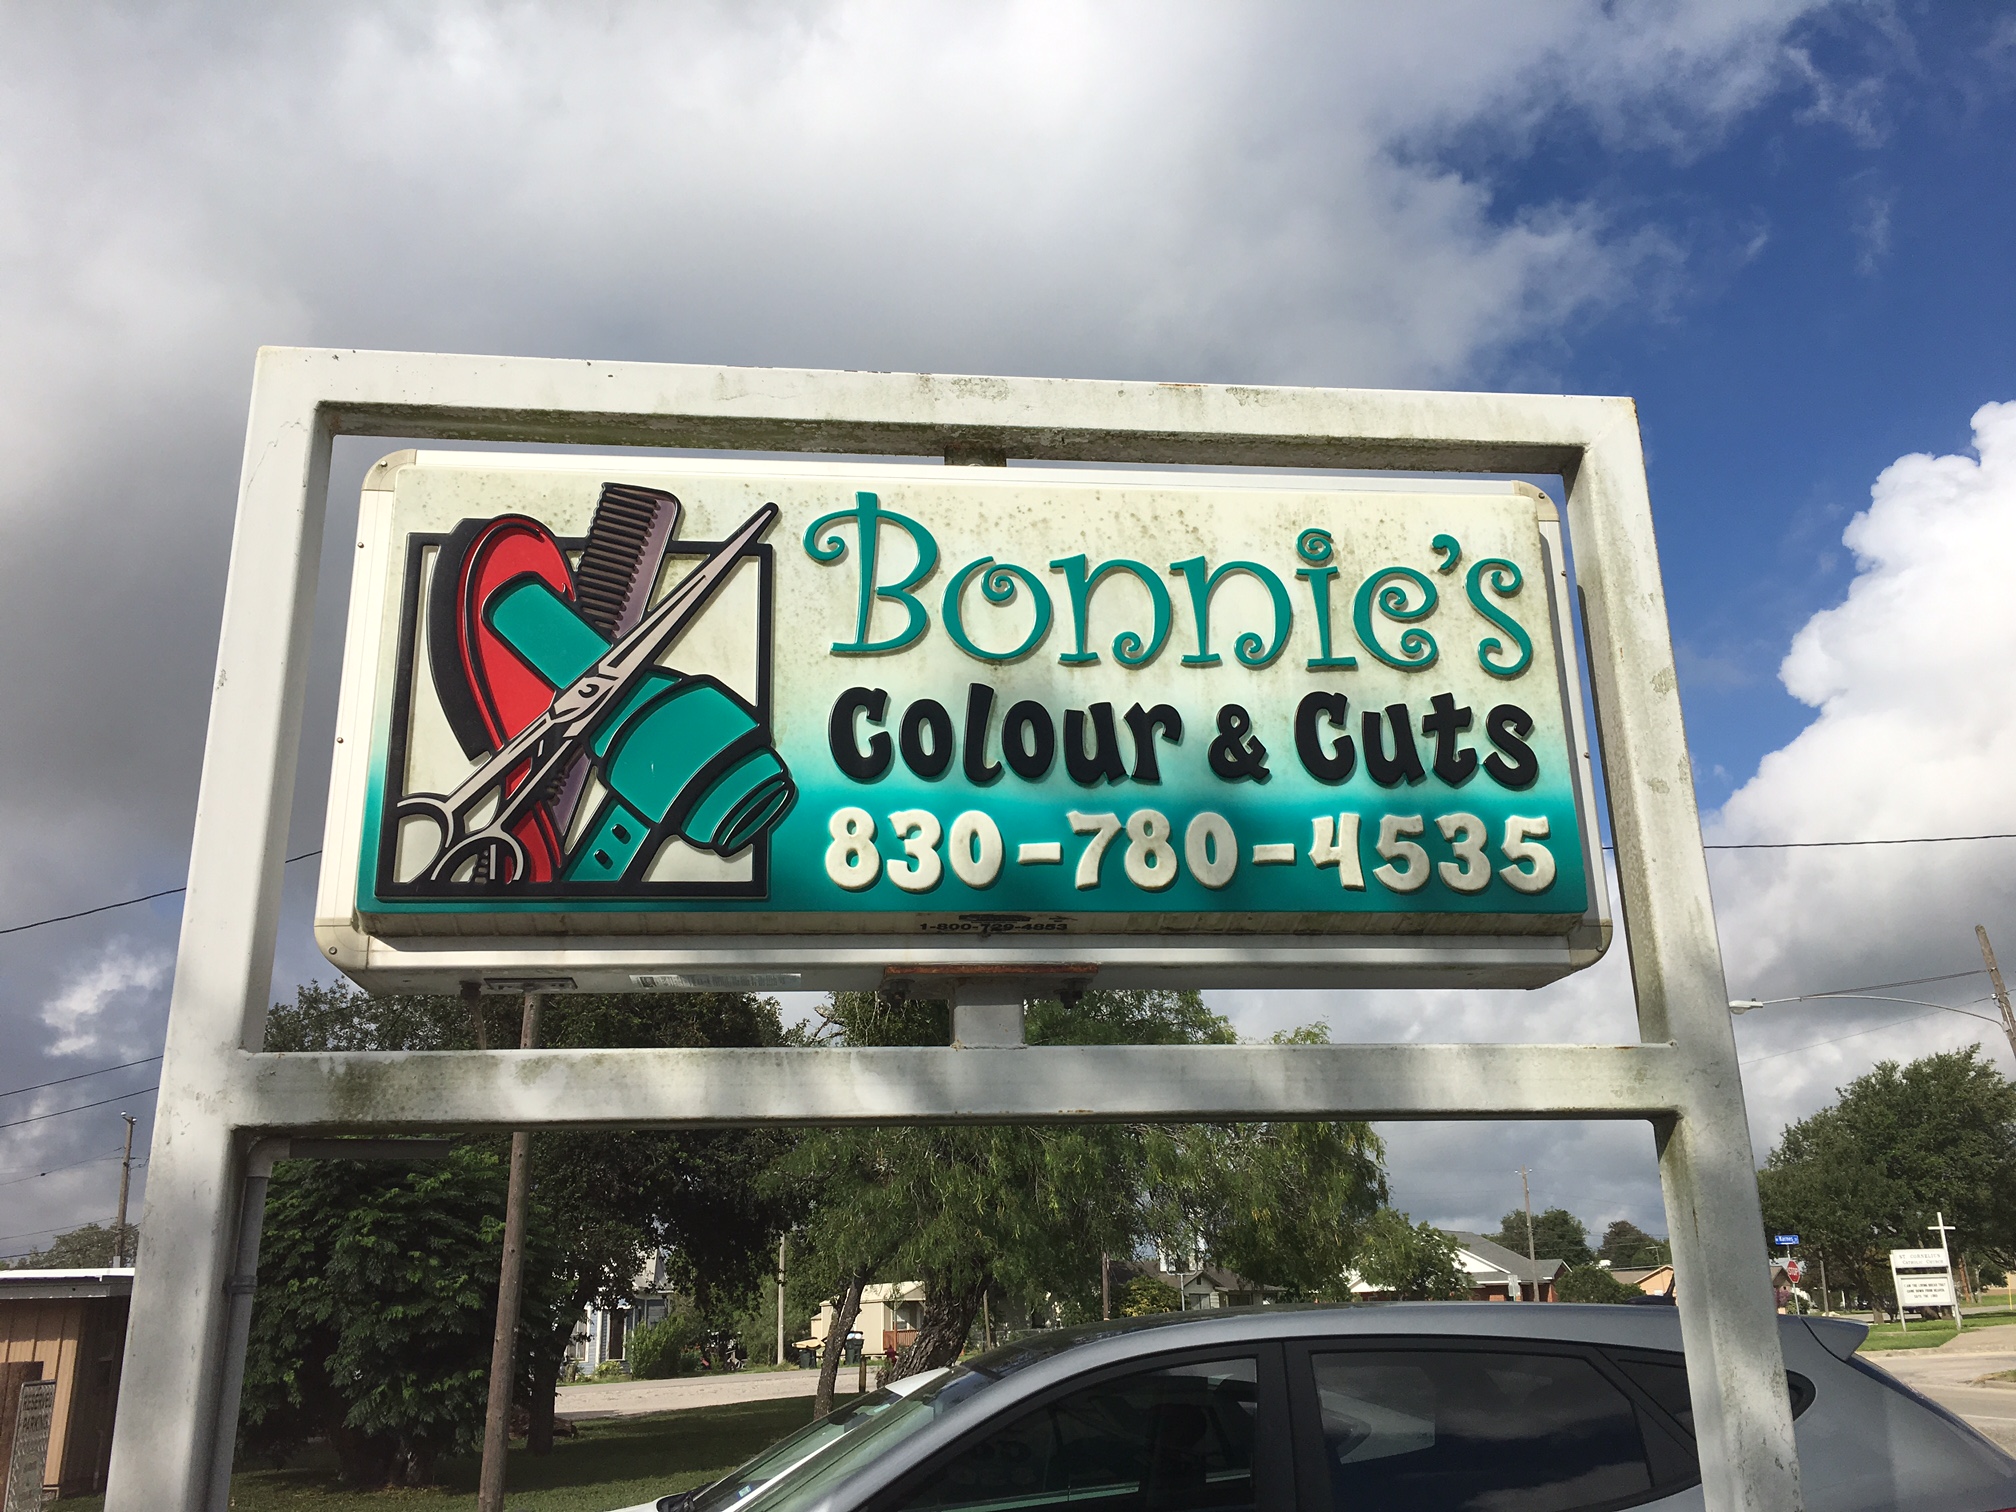 Bonnie's Colour & Cuts
102 Lady Badger Dr.
Karnes City, TX 78118
830 780-4535